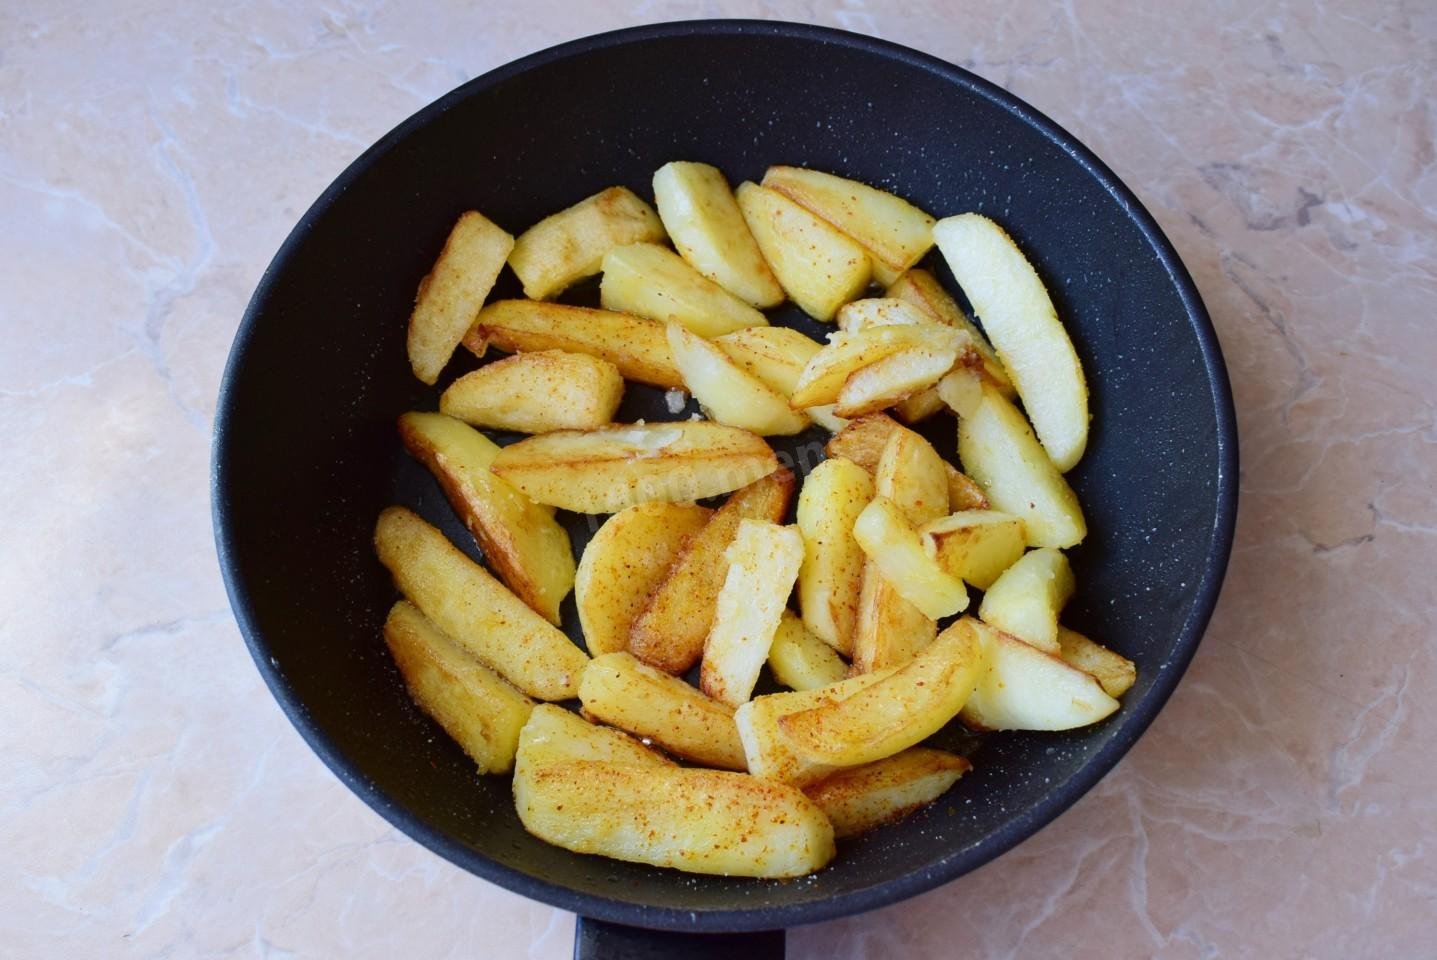 Жареная картошка на воде на сковороде. Жареный картофель. Круглая картошка на сковороде. Золотистый жареный картофель на сковороде. Картошка обжаренная круглая на сковороде.